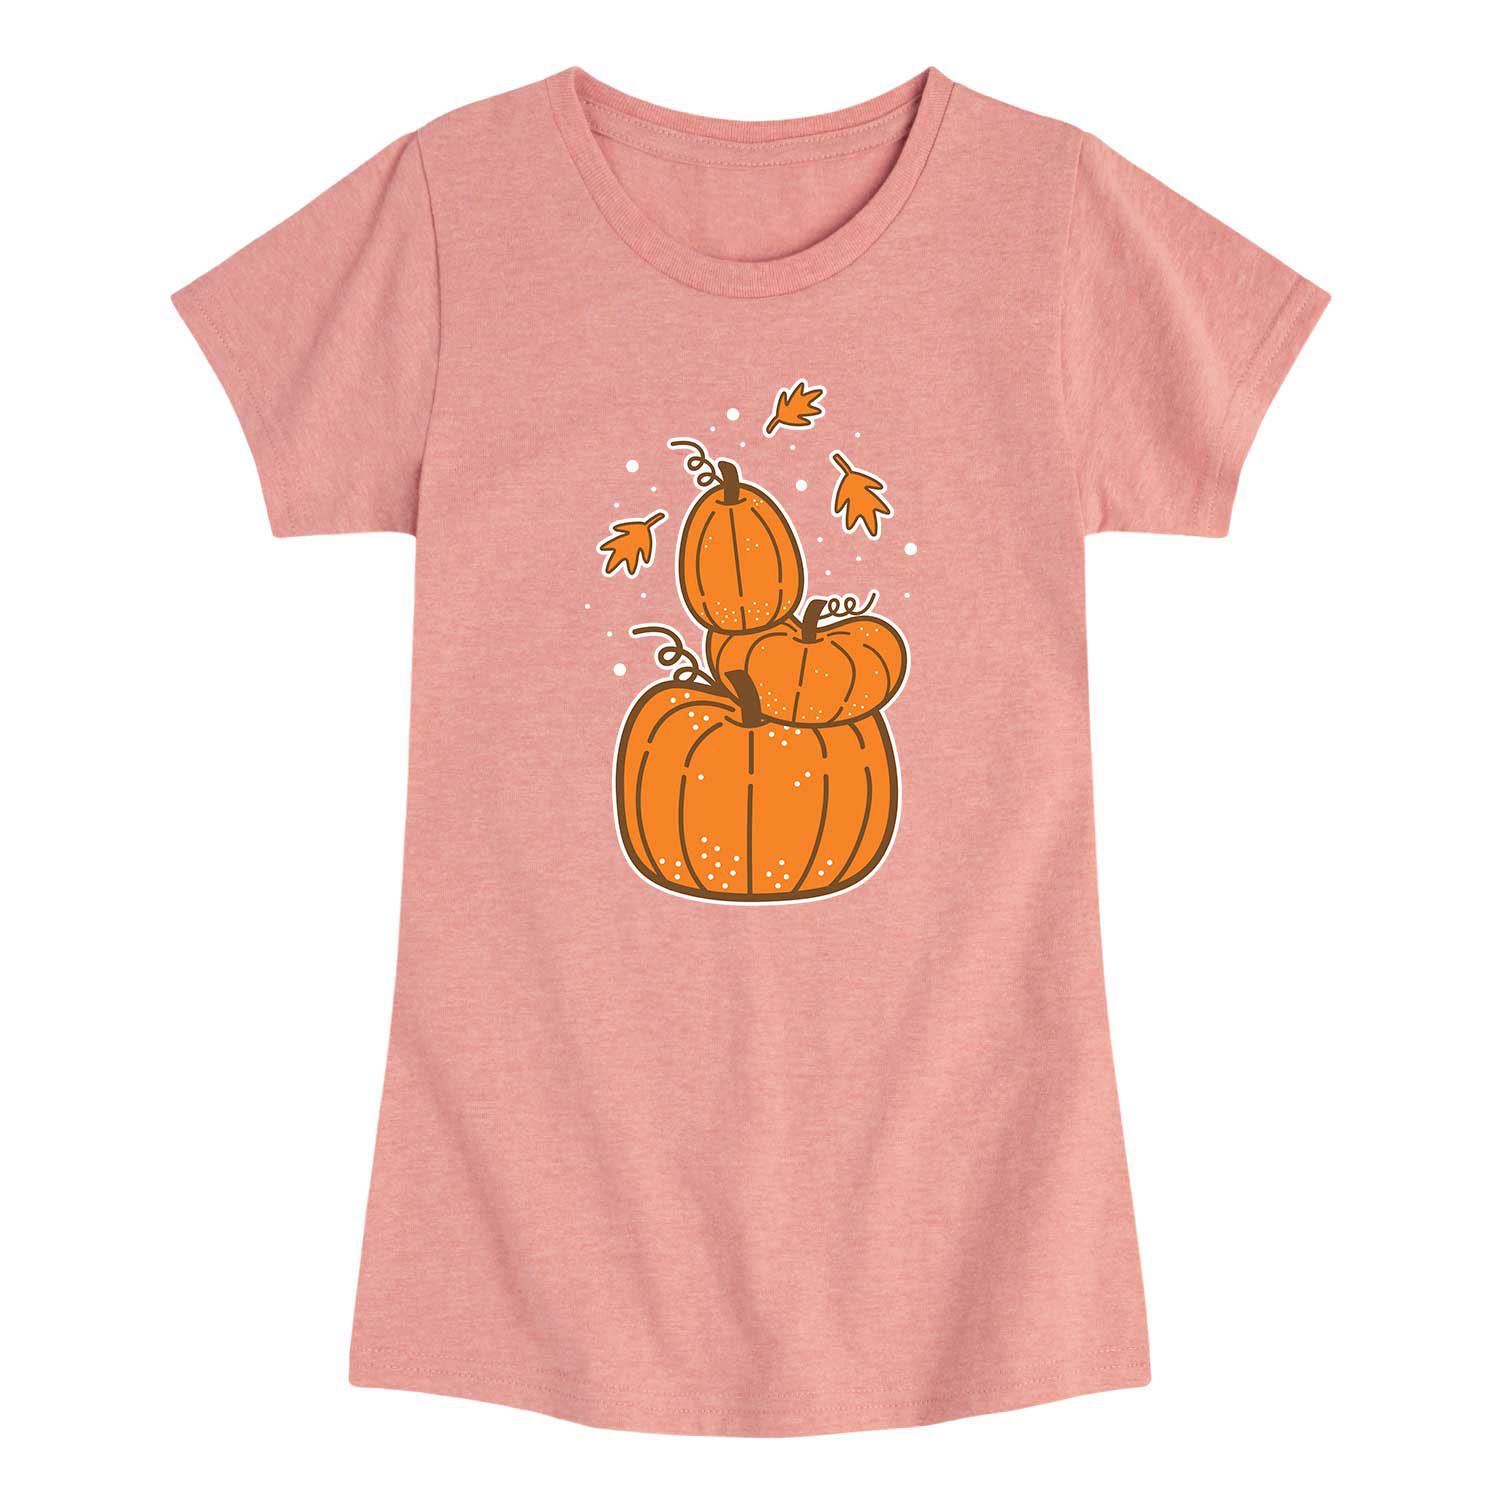 Осенняя футболка с рисунком тыквы для девочек 7–16 лет Licensed Character футболка с рисунком конфет и тыквы для девочек 7–16 лет licensed character